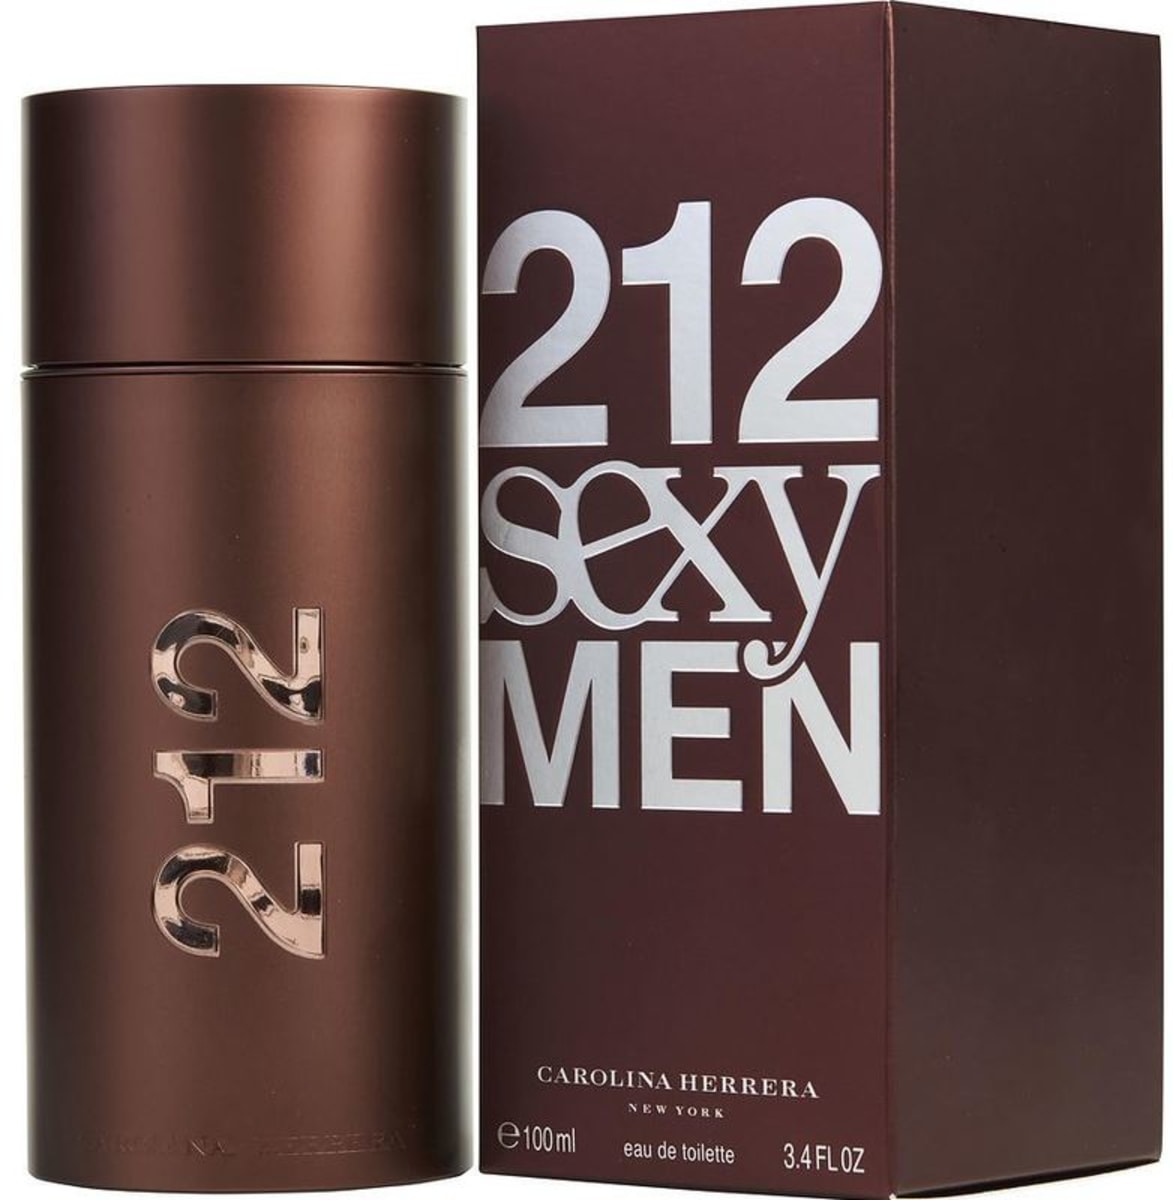 Carolina Herrera Cologne 212 Sexy Men EDT Spray 3.4 OZ Unisex Fragrance ...